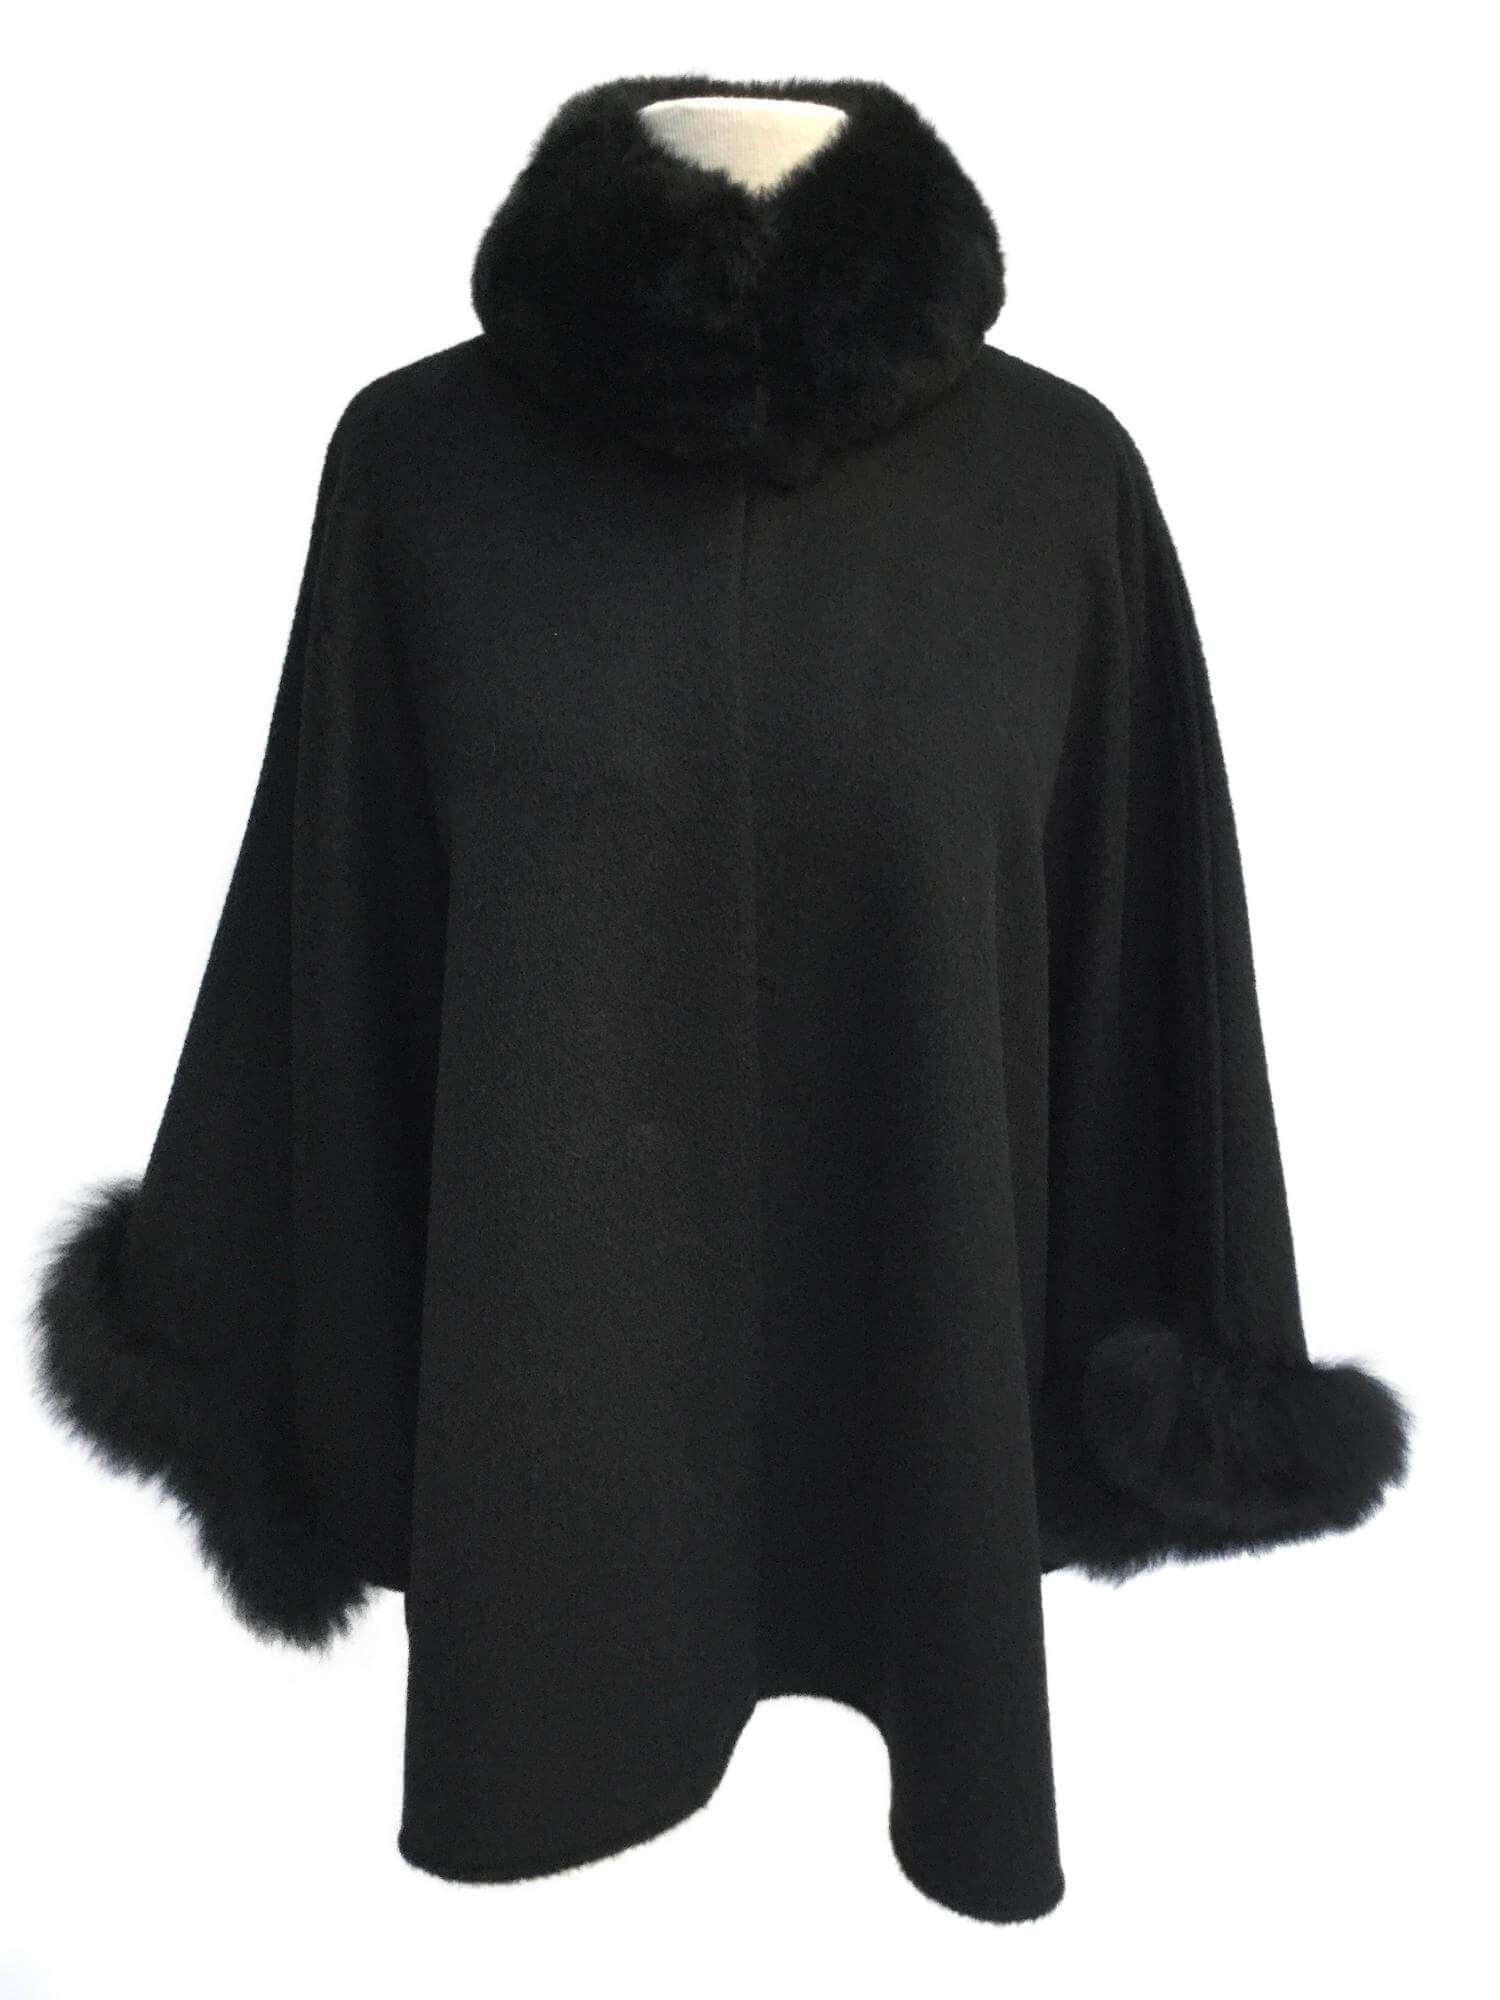 Black Alpaca Cape Coat Fur Collar-designer resale